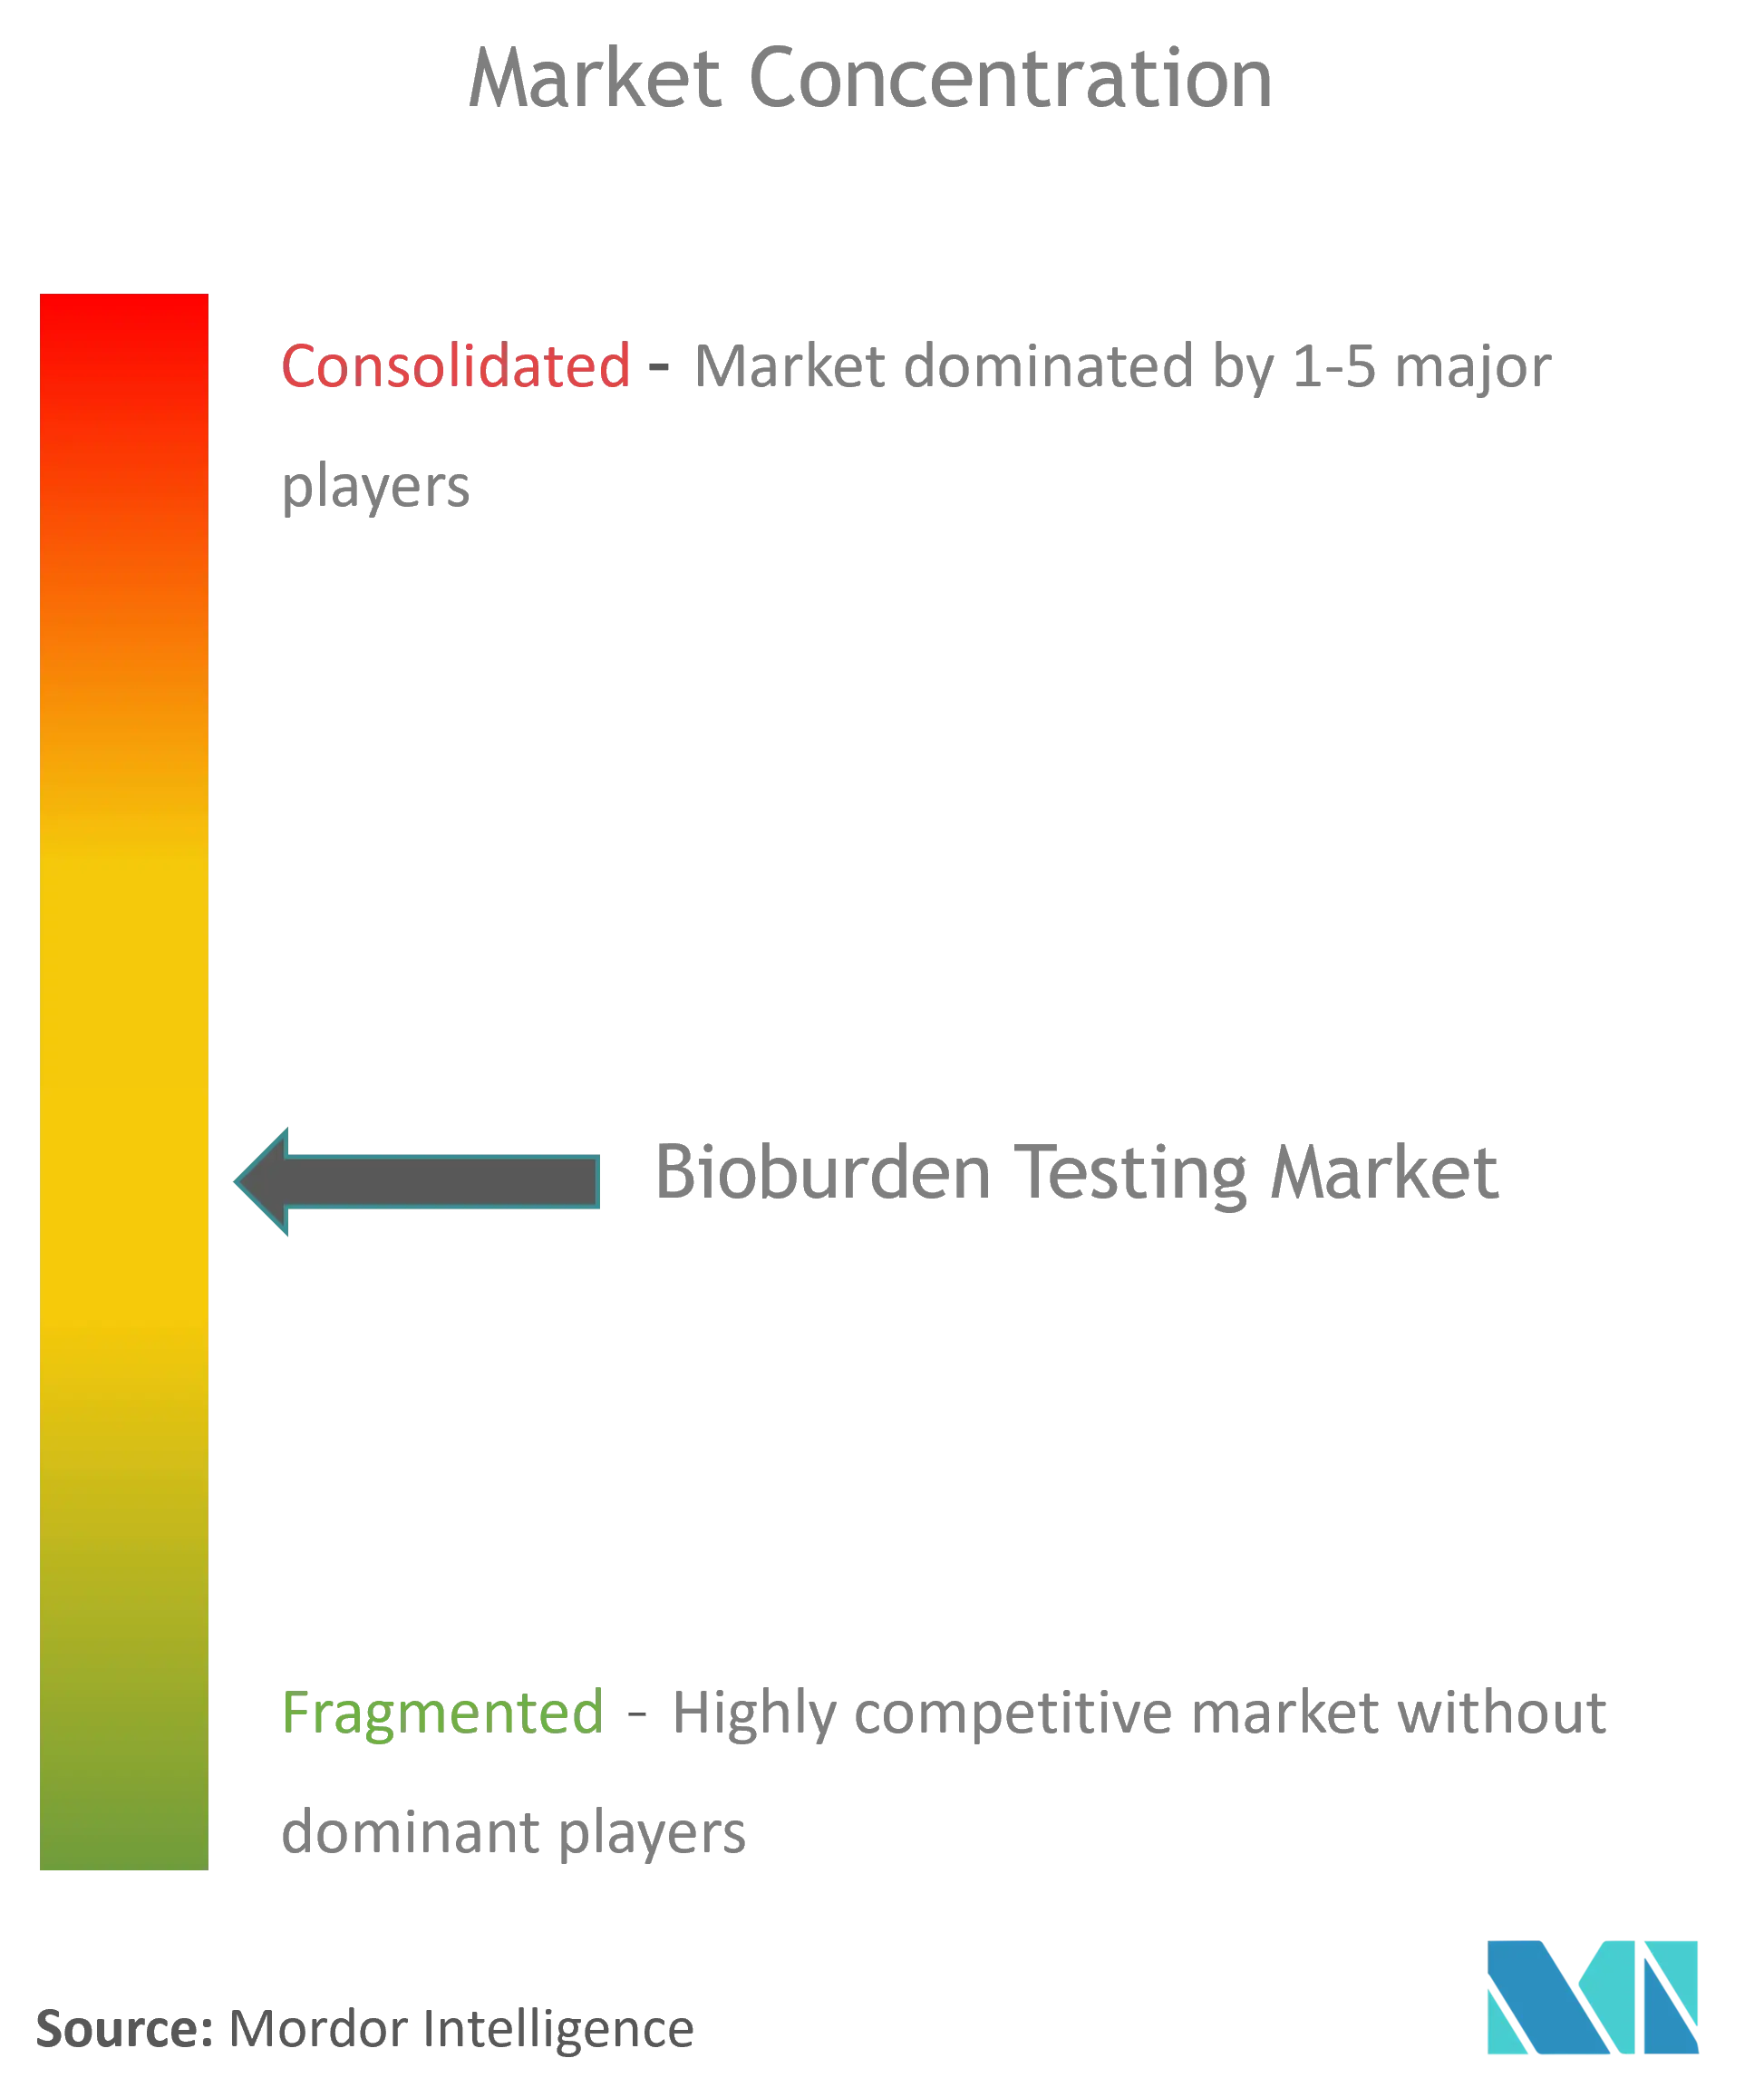 Global Bioburden Testing Market Concentration